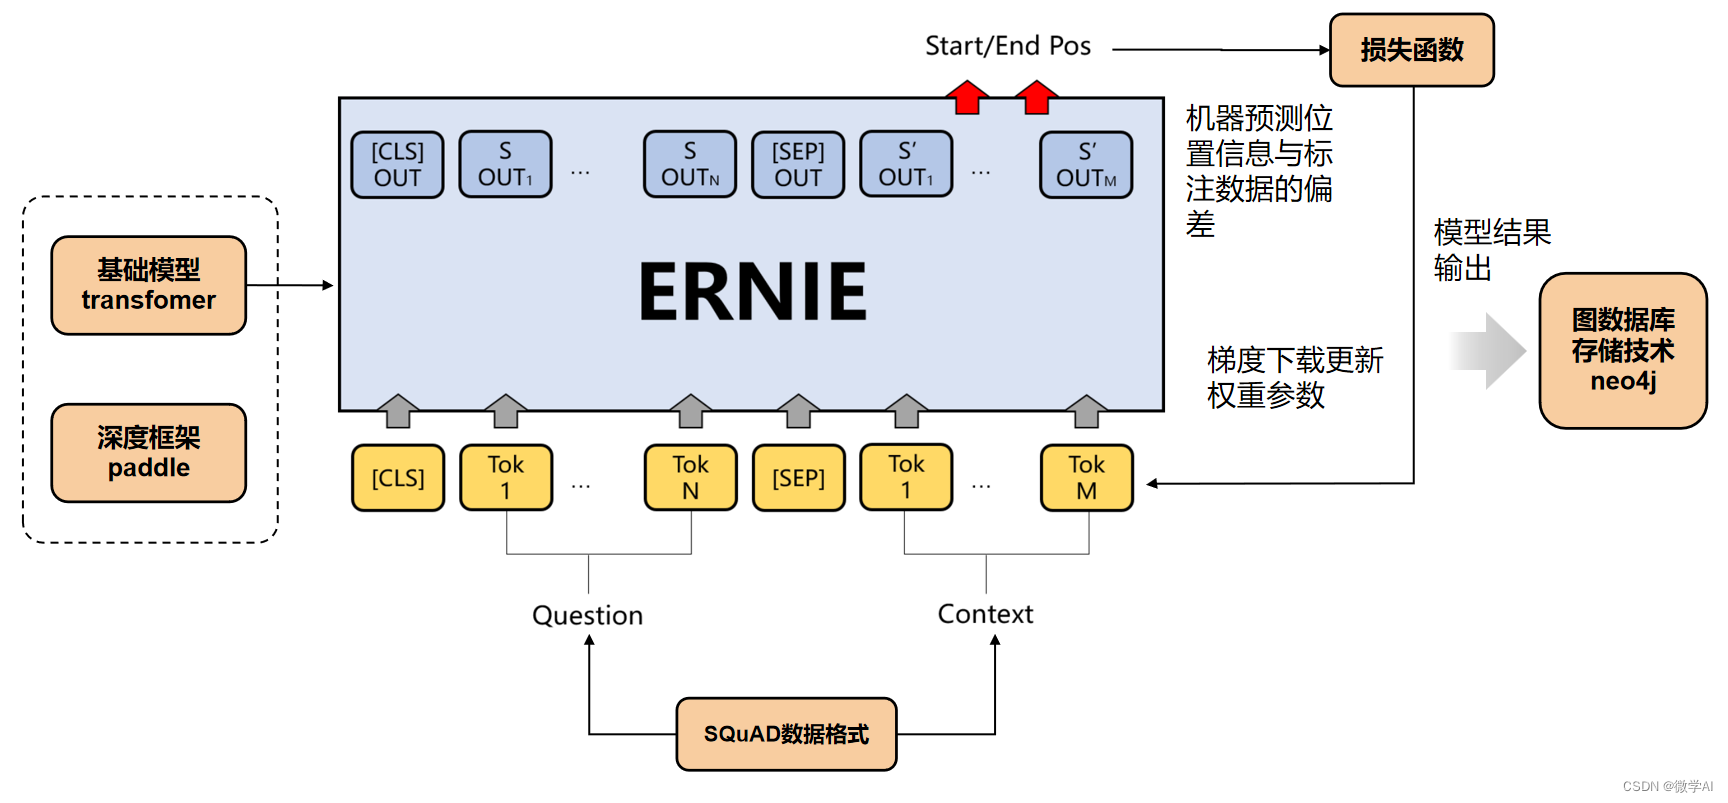 大模型的实践应用6-百度文心一言的基础模型ERNIE的详细介绍，与BERT模型的比较说明